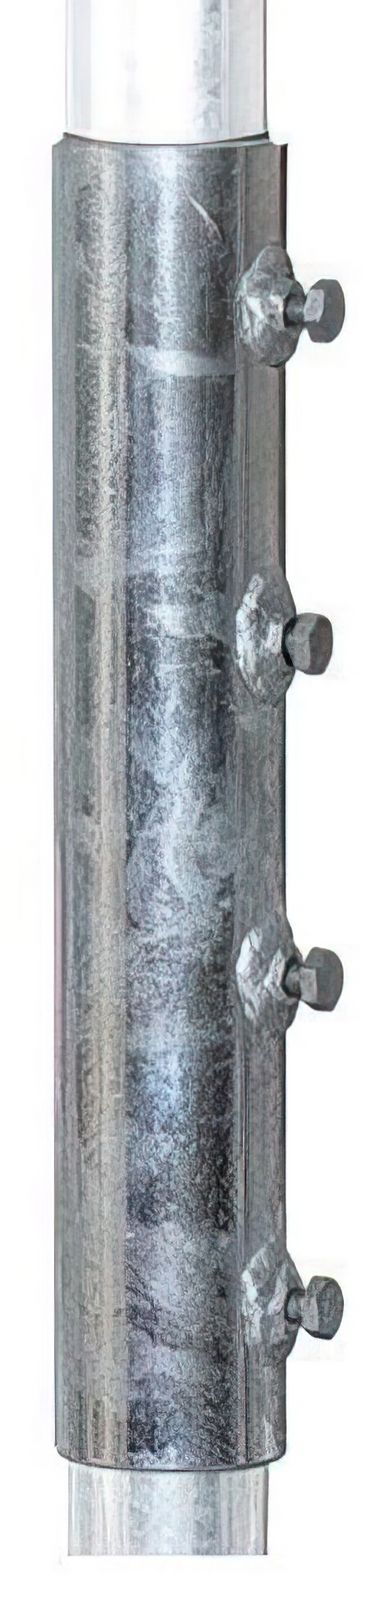 60mm Masthülse / Verbinder XmediaSat MH60 für 60er Rohr feuerverzinkt rostfrei